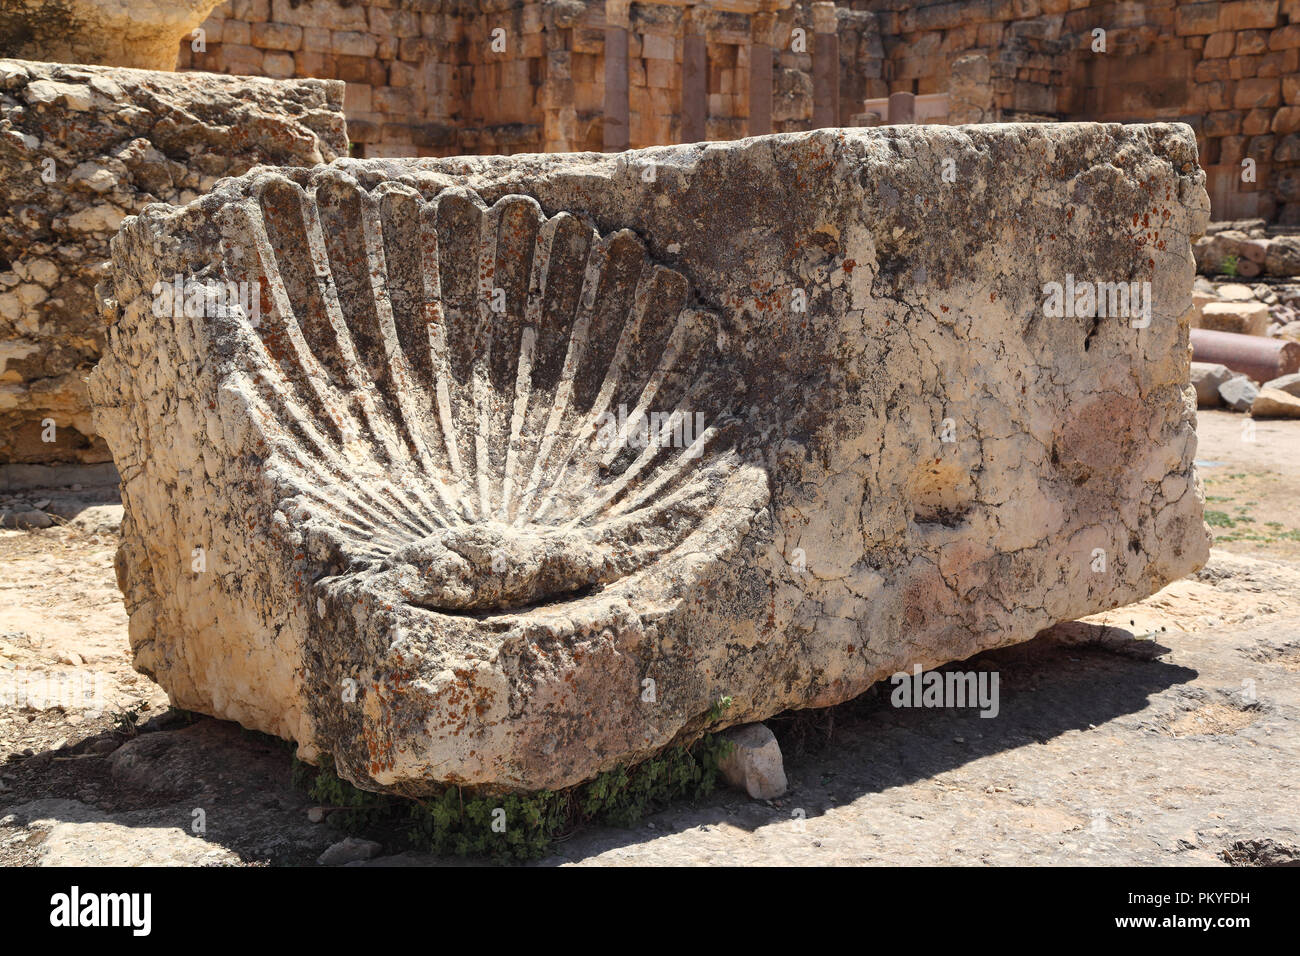 Ruines Romaines de Baalbek au Liban Banque D'Images